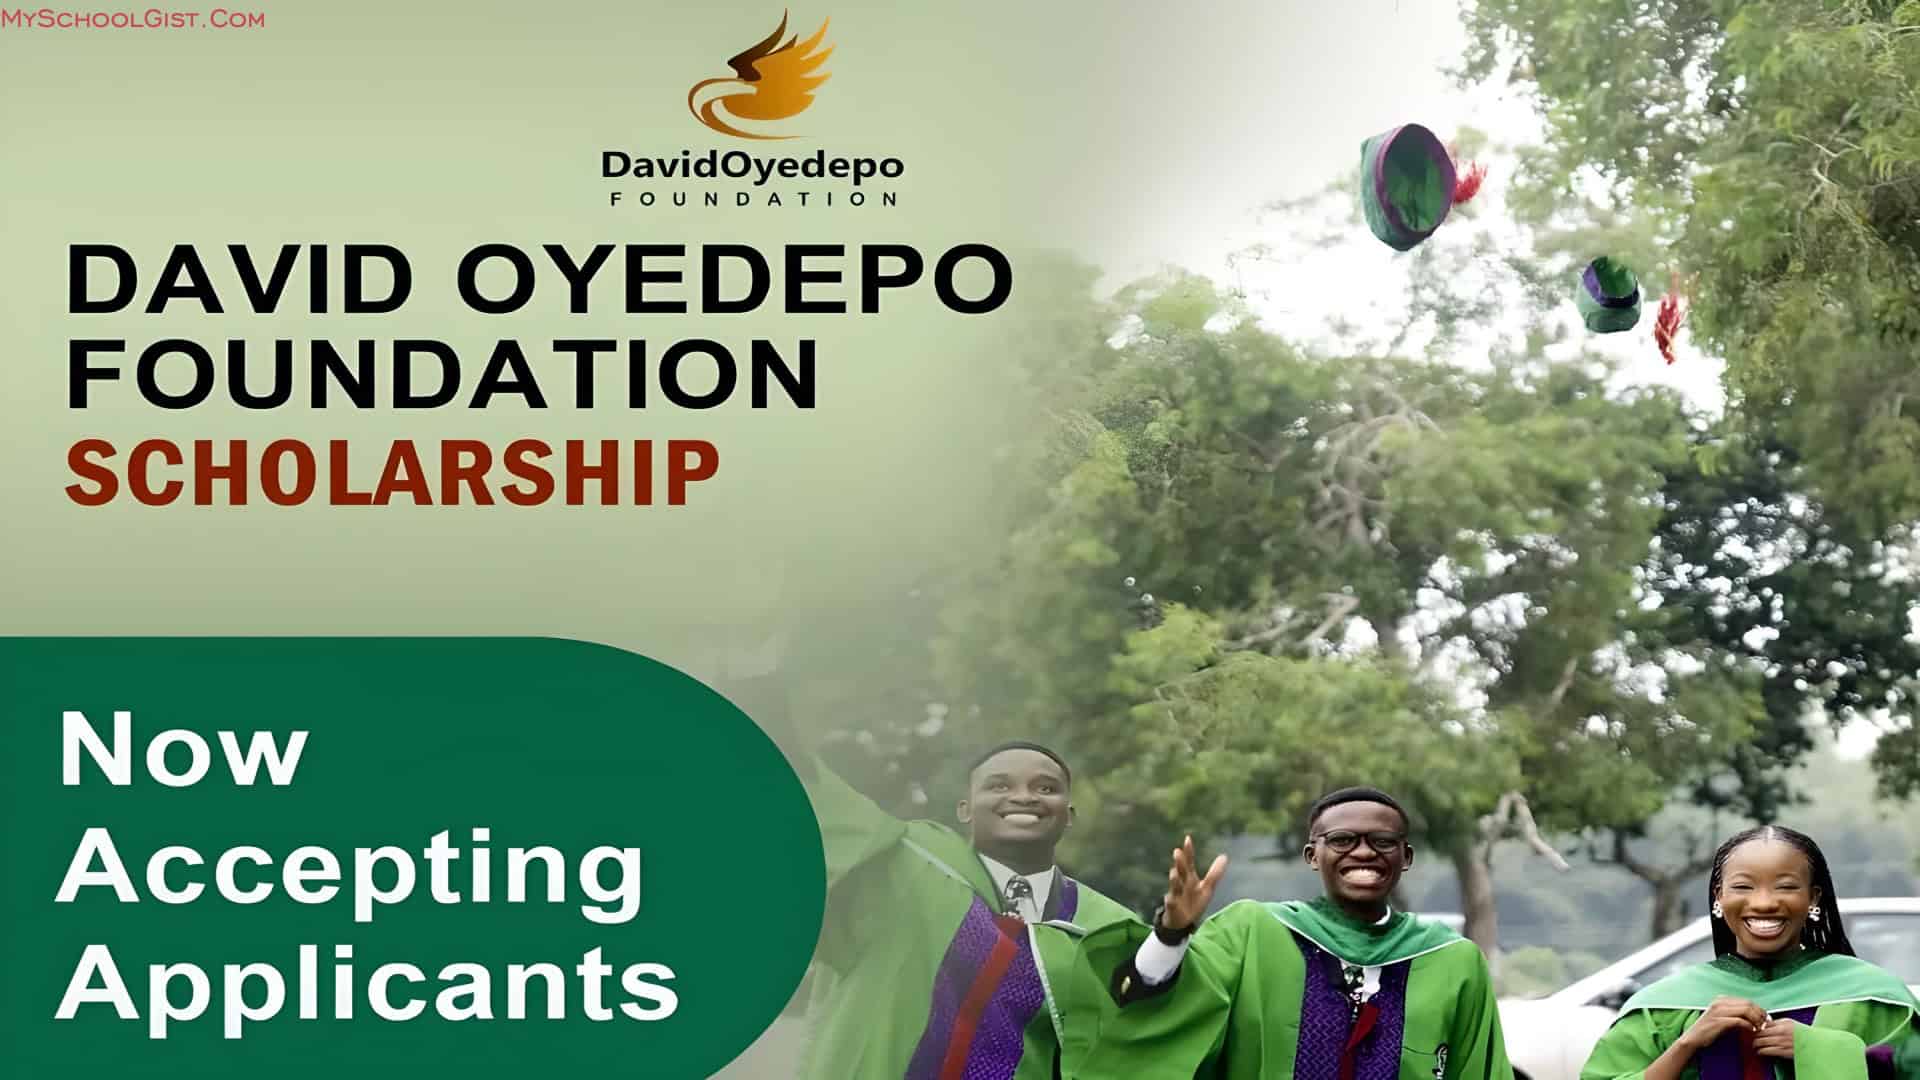 David Oyedepo Foundation Scholarship Programme